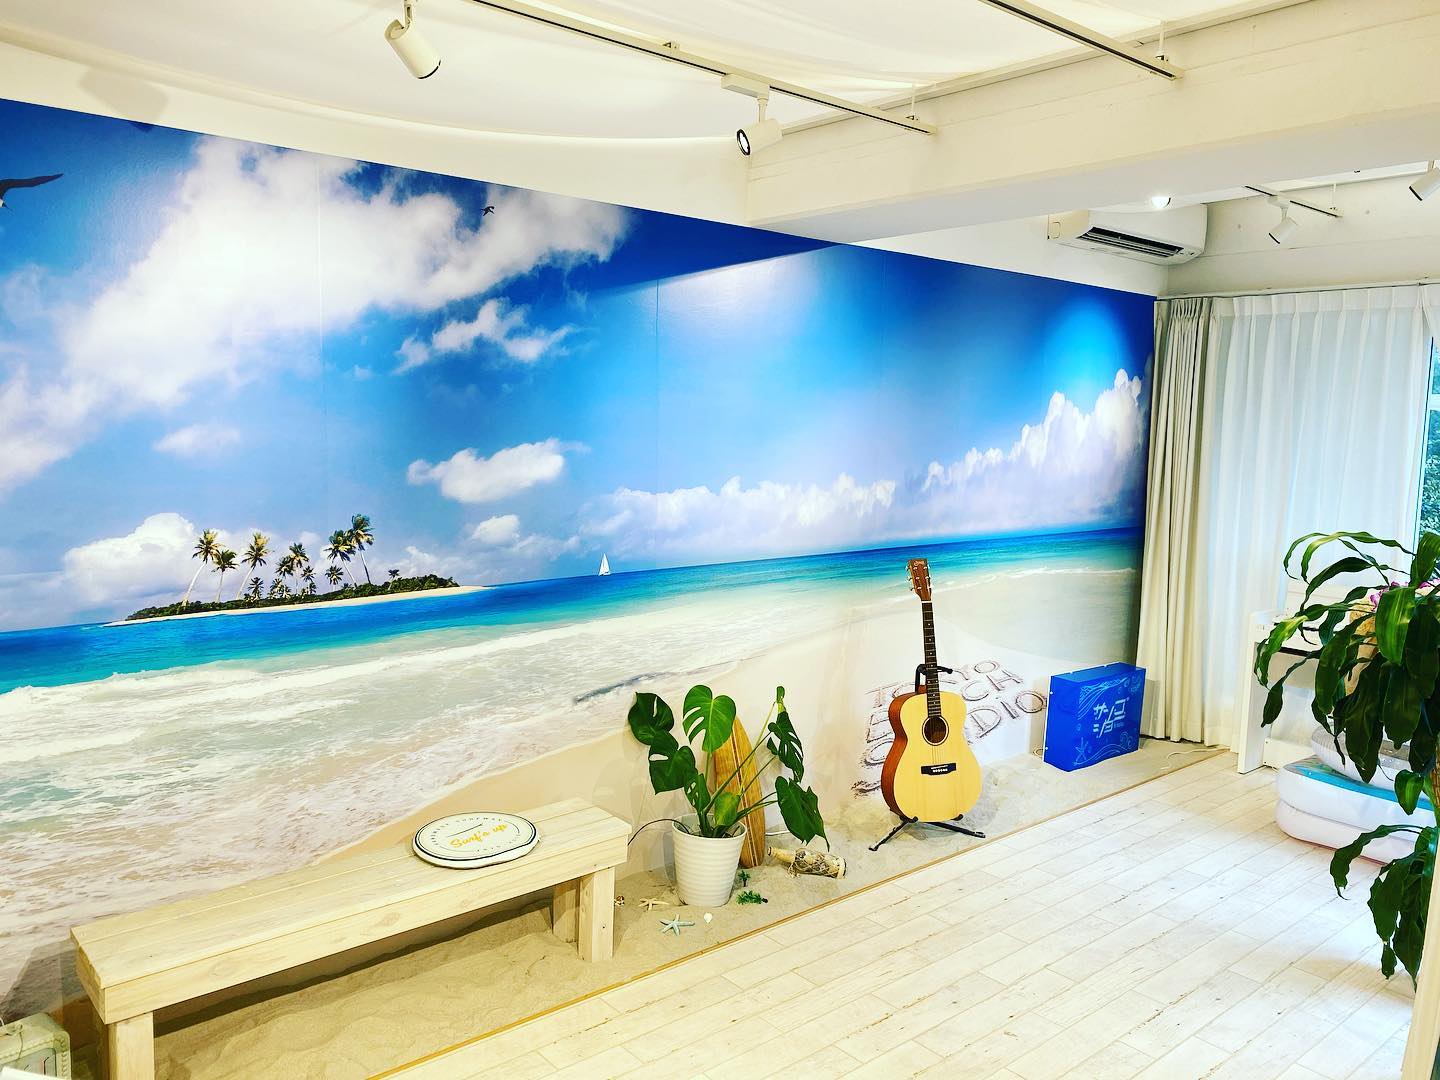 日本で初めてのビーチをコンセプトにした音楽スタジオです。